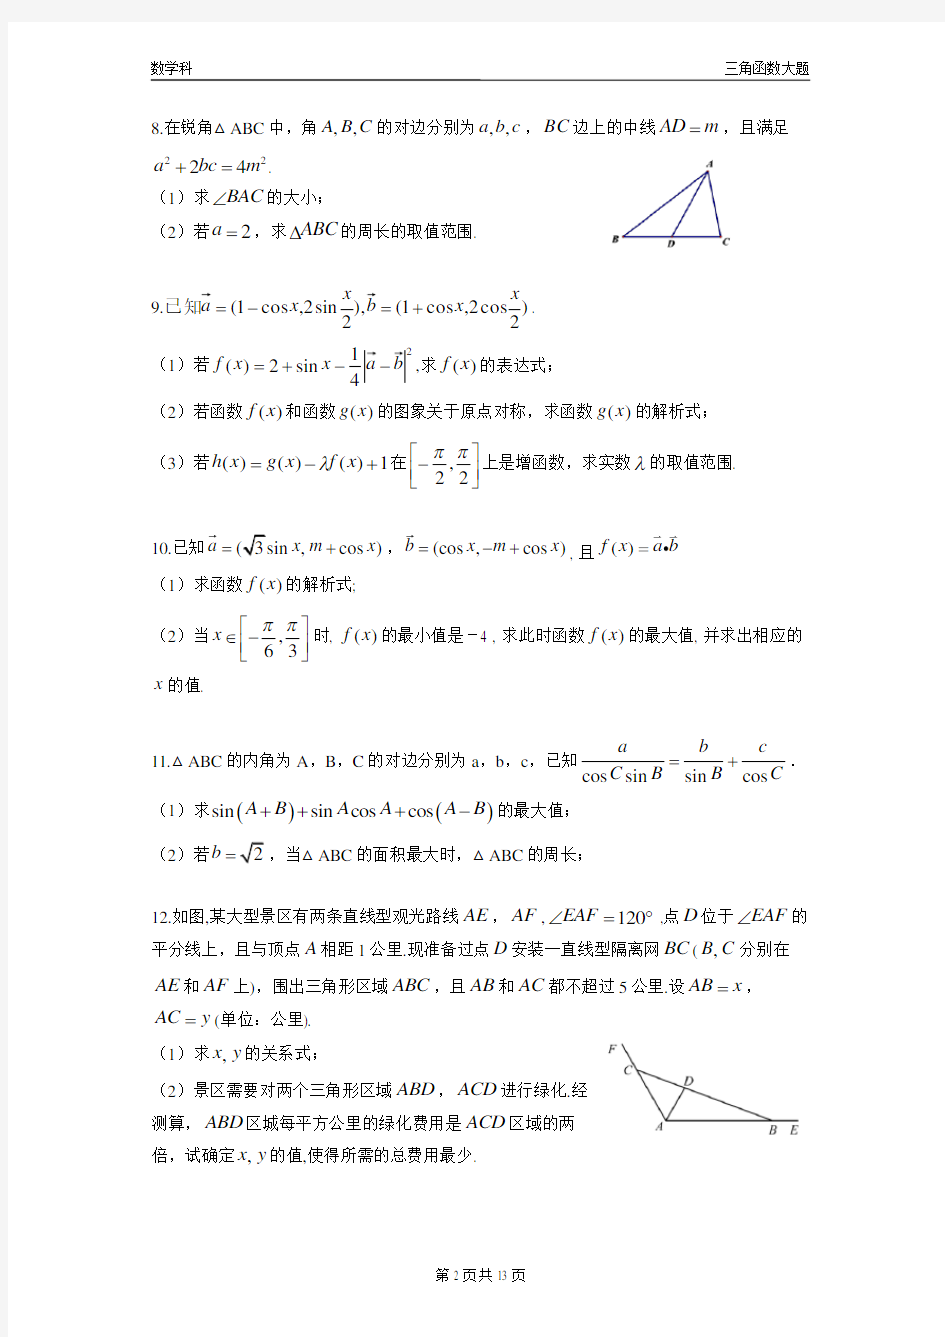 (完整版)2019年高考三角函数大题专项练习集(一)